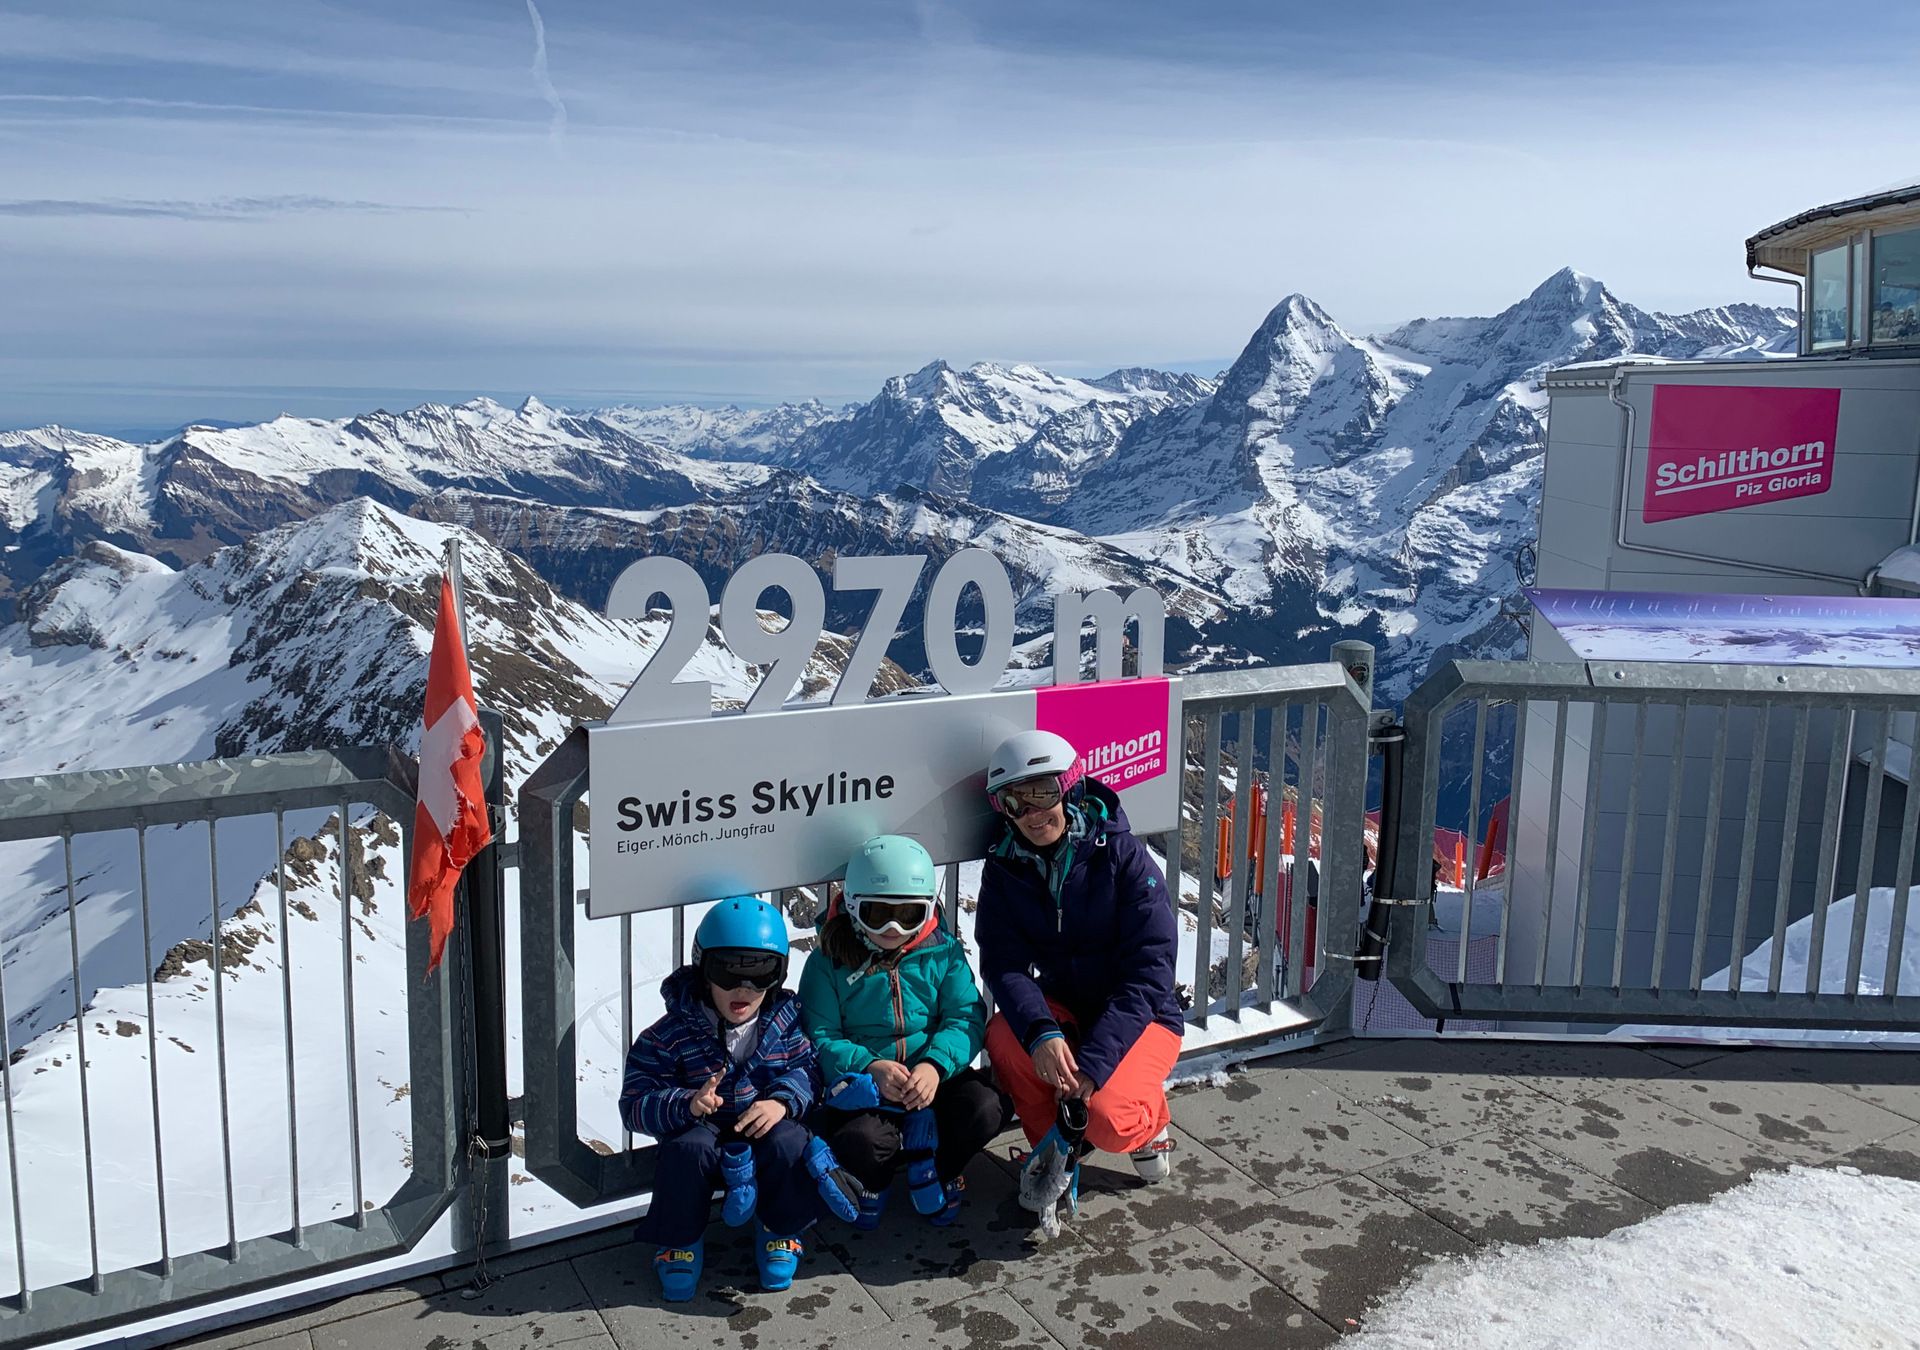 En la zona de Murren tenemos la zona más alta de toda la Jungfrau Ski Region, el Schiltron, con 2970.